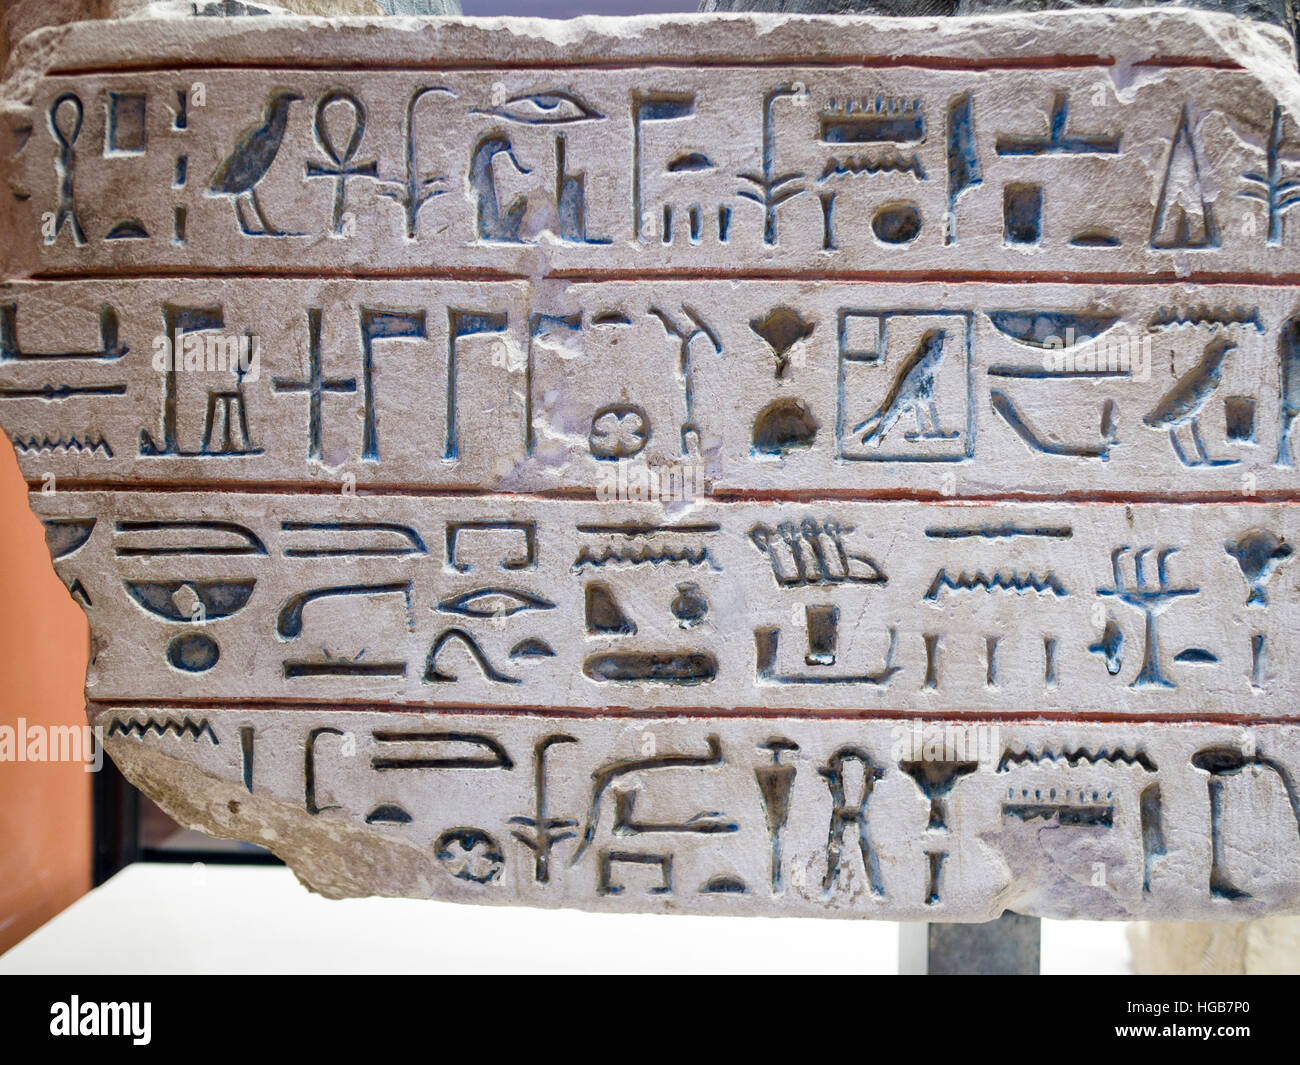 Les hiéroglyphes égyptiens gravé dans la pierre. Quatre lignes d'hiéroglyphes sur une tablette de pierre exposés dans le musée. Musée du Louvre, Paris, Banque D'Images